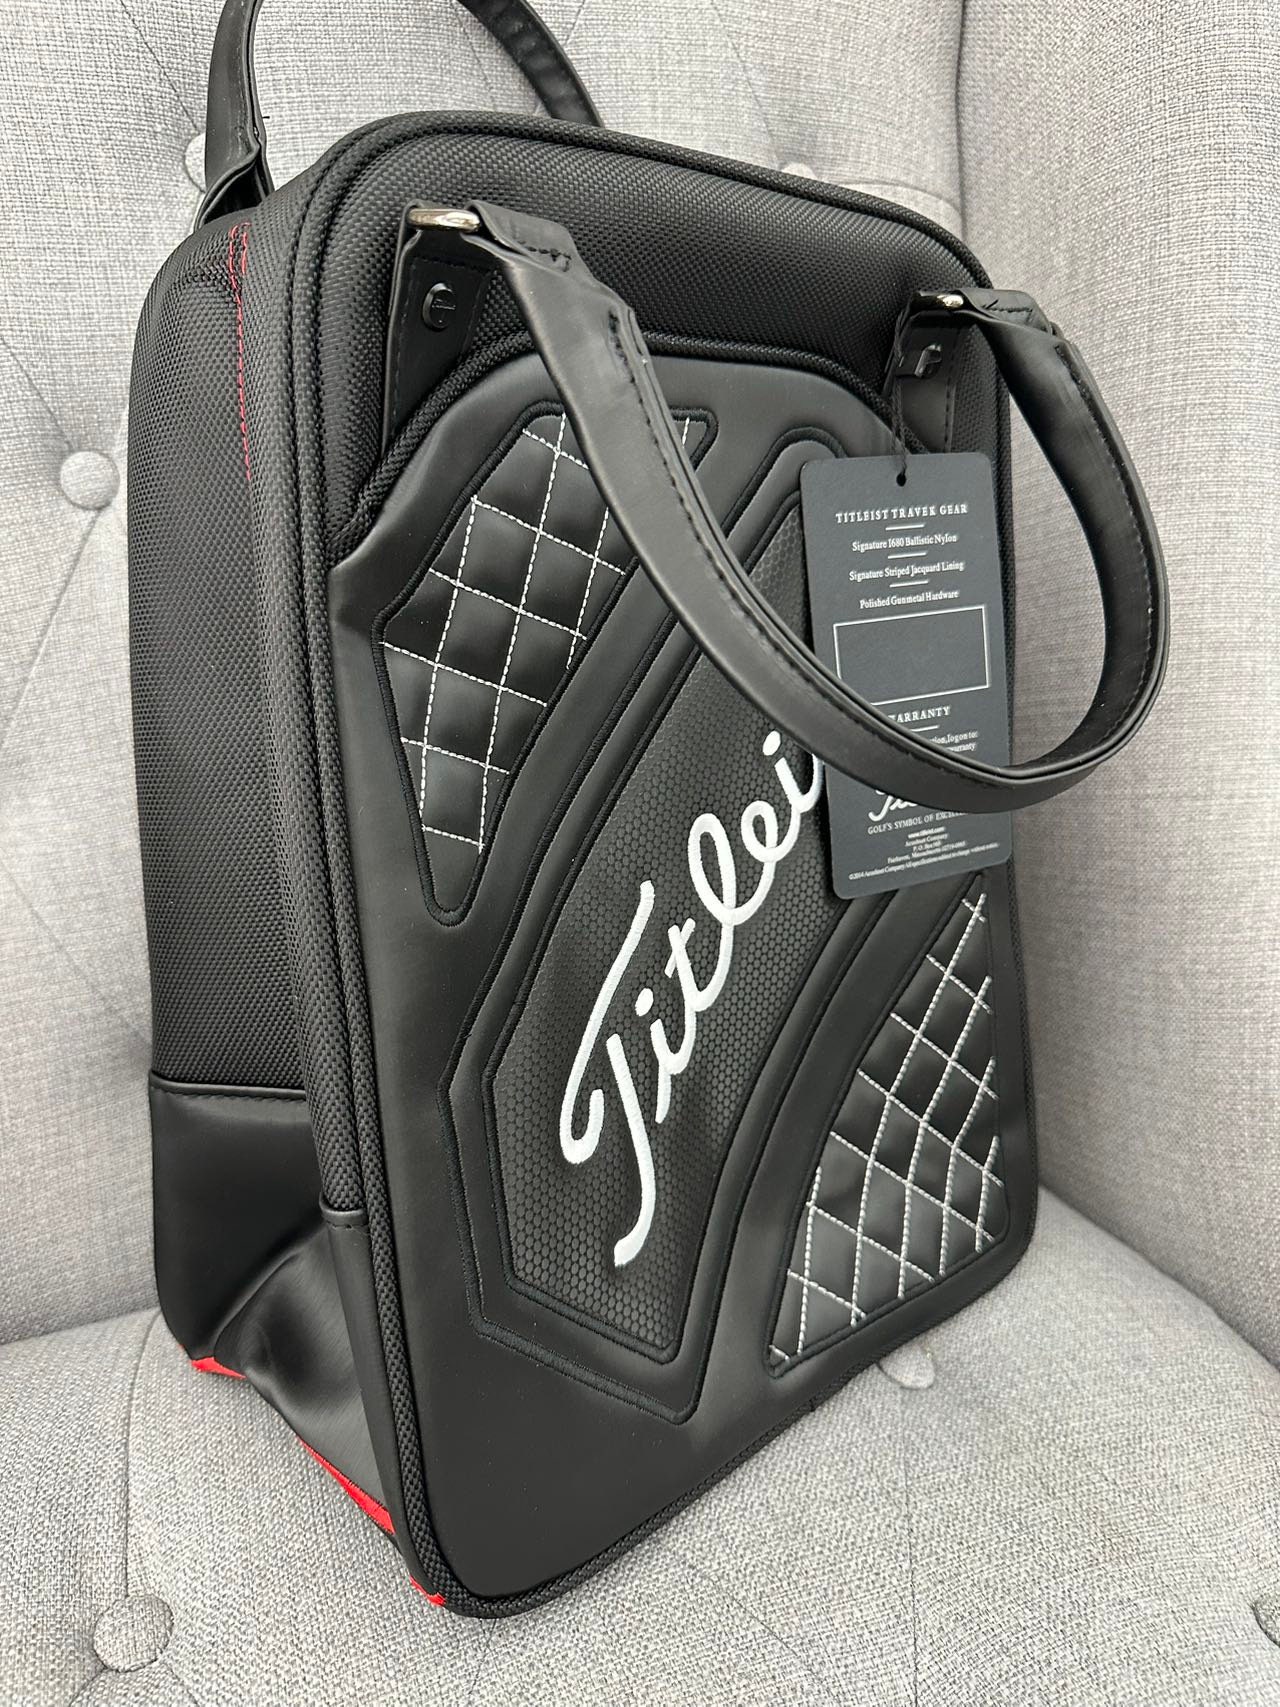 Titleist TA7CSB Golf Shag Bag Review